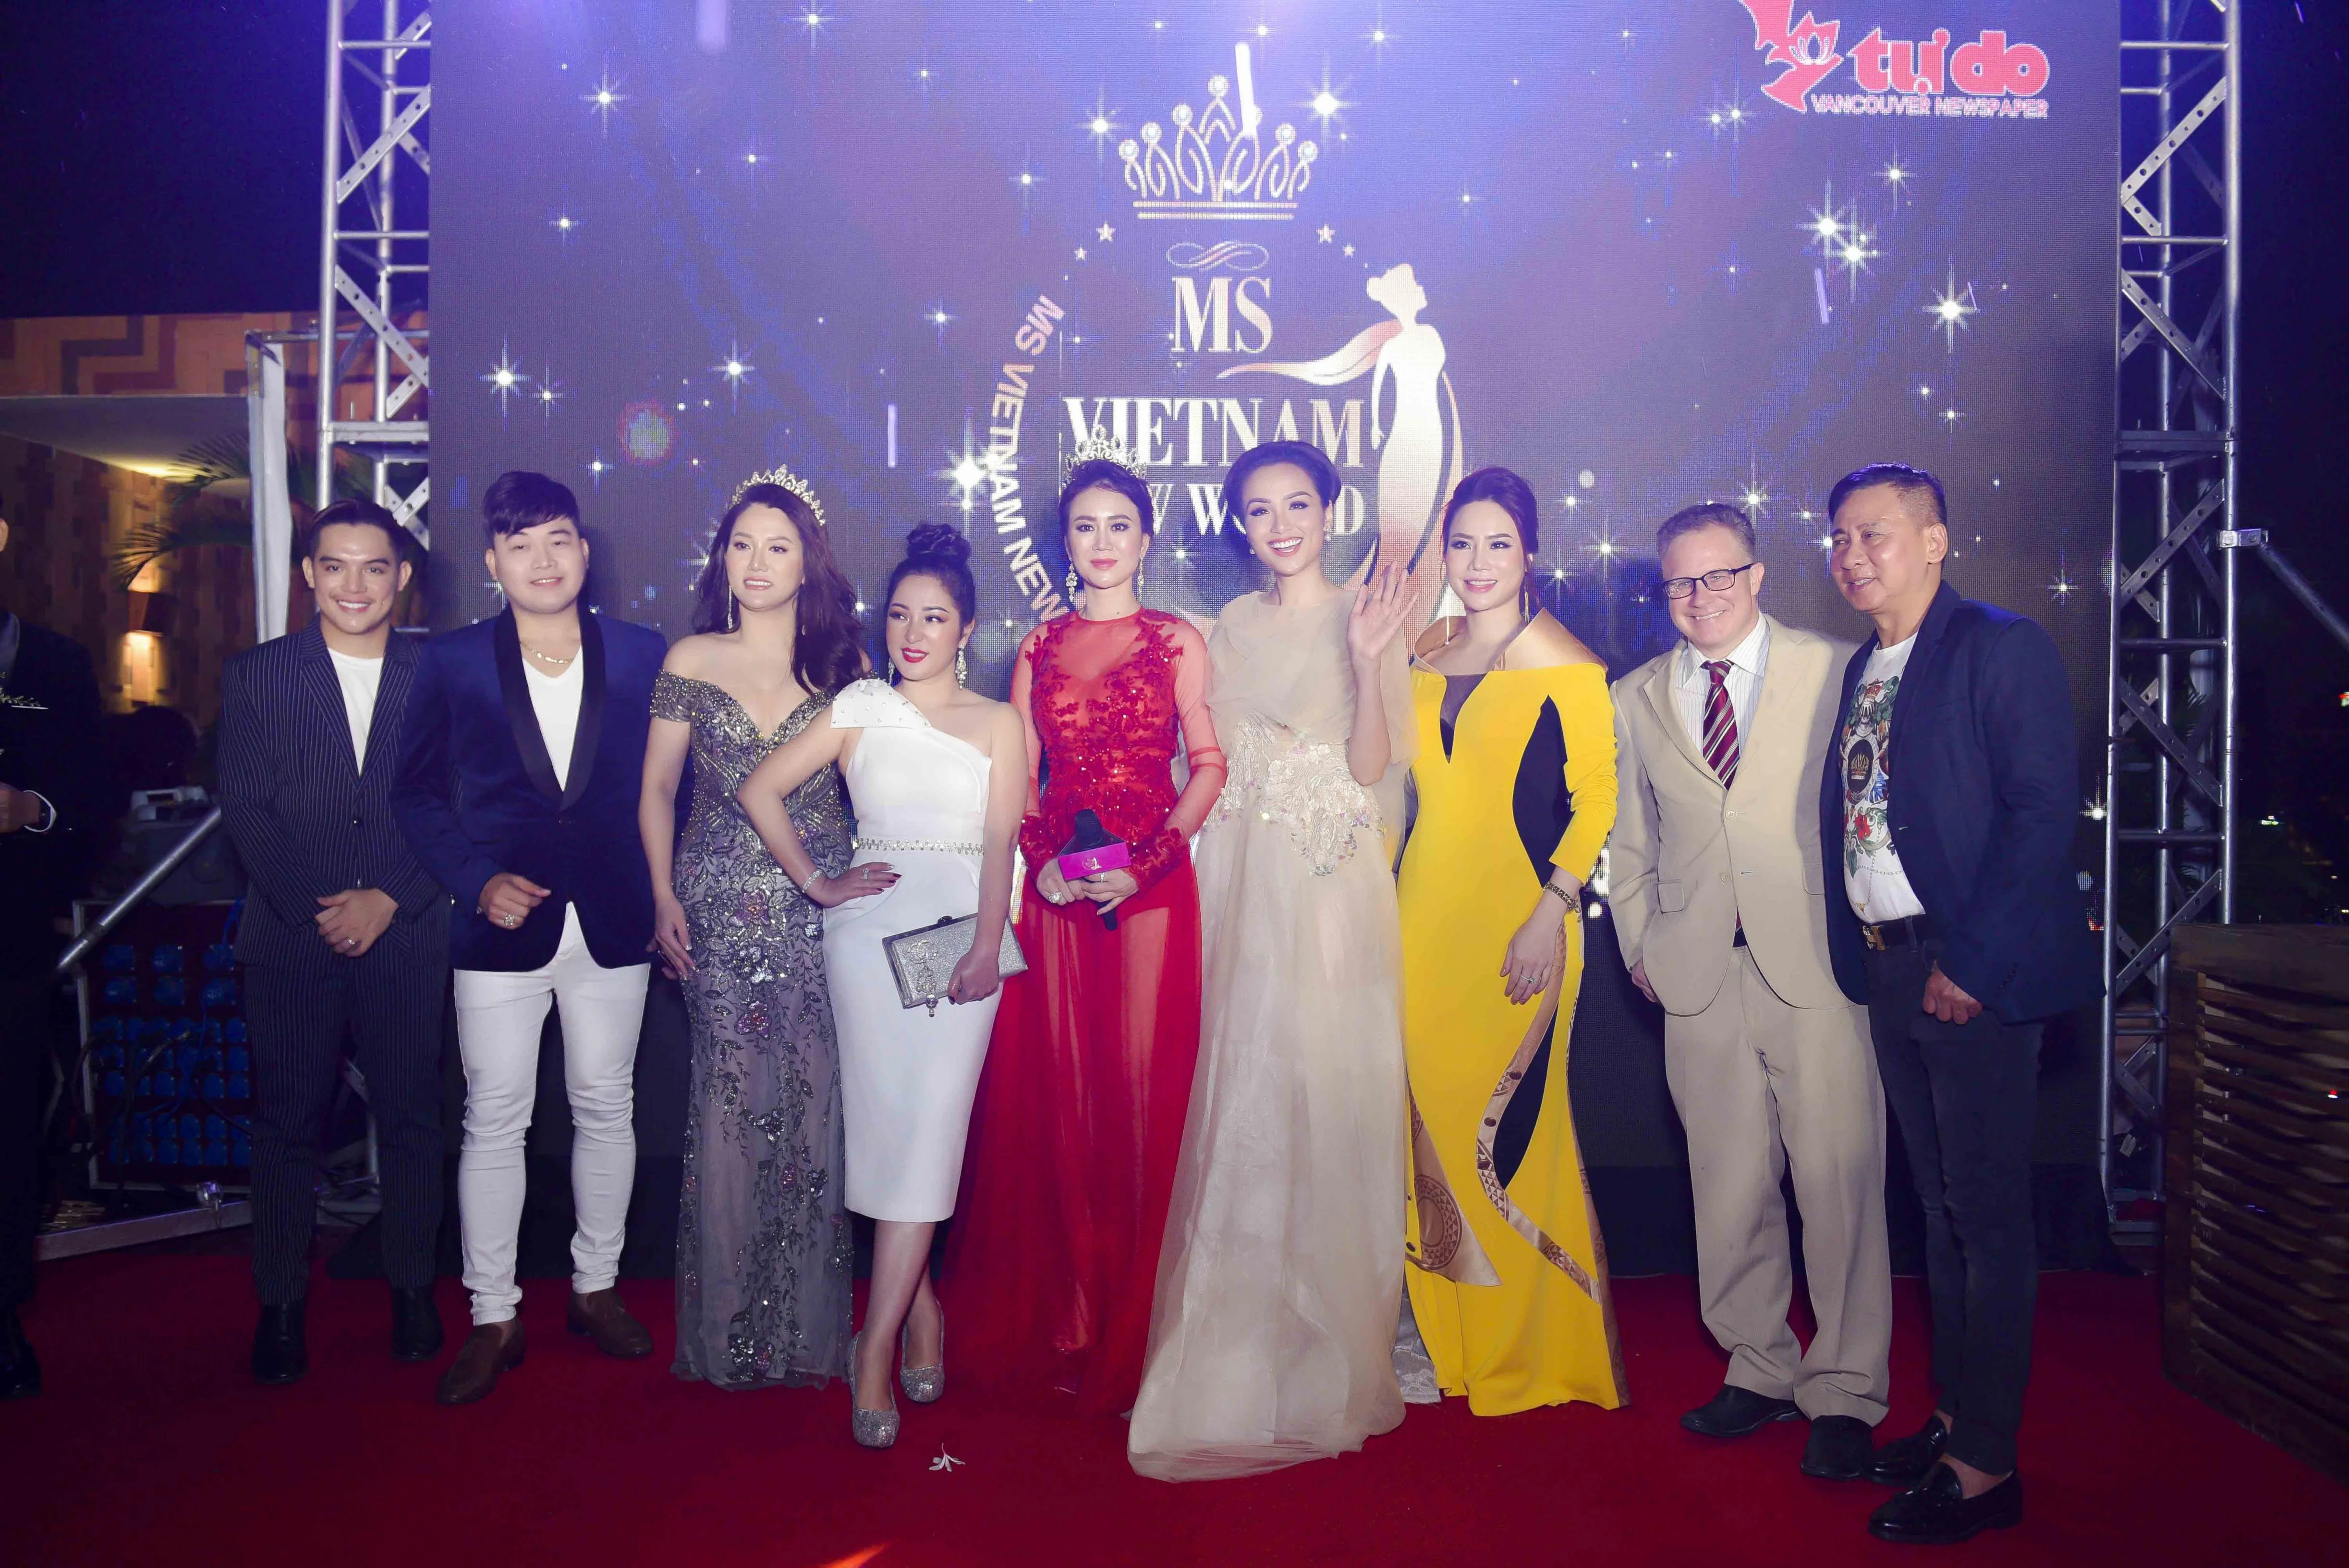 Ms Vietnam New World là cuộc thi tìm kiếm gương mặt đại diện cho vẻ đẹp, tài năng, trí tuệ và nhân cách của phụ nữ gốc Việt sinh sống và làm việc trên toàn thế giới. Đêm Chung kết cuộc thi sẽ diễn ra tại Vancouver, Cadana vào tháng 9/2018